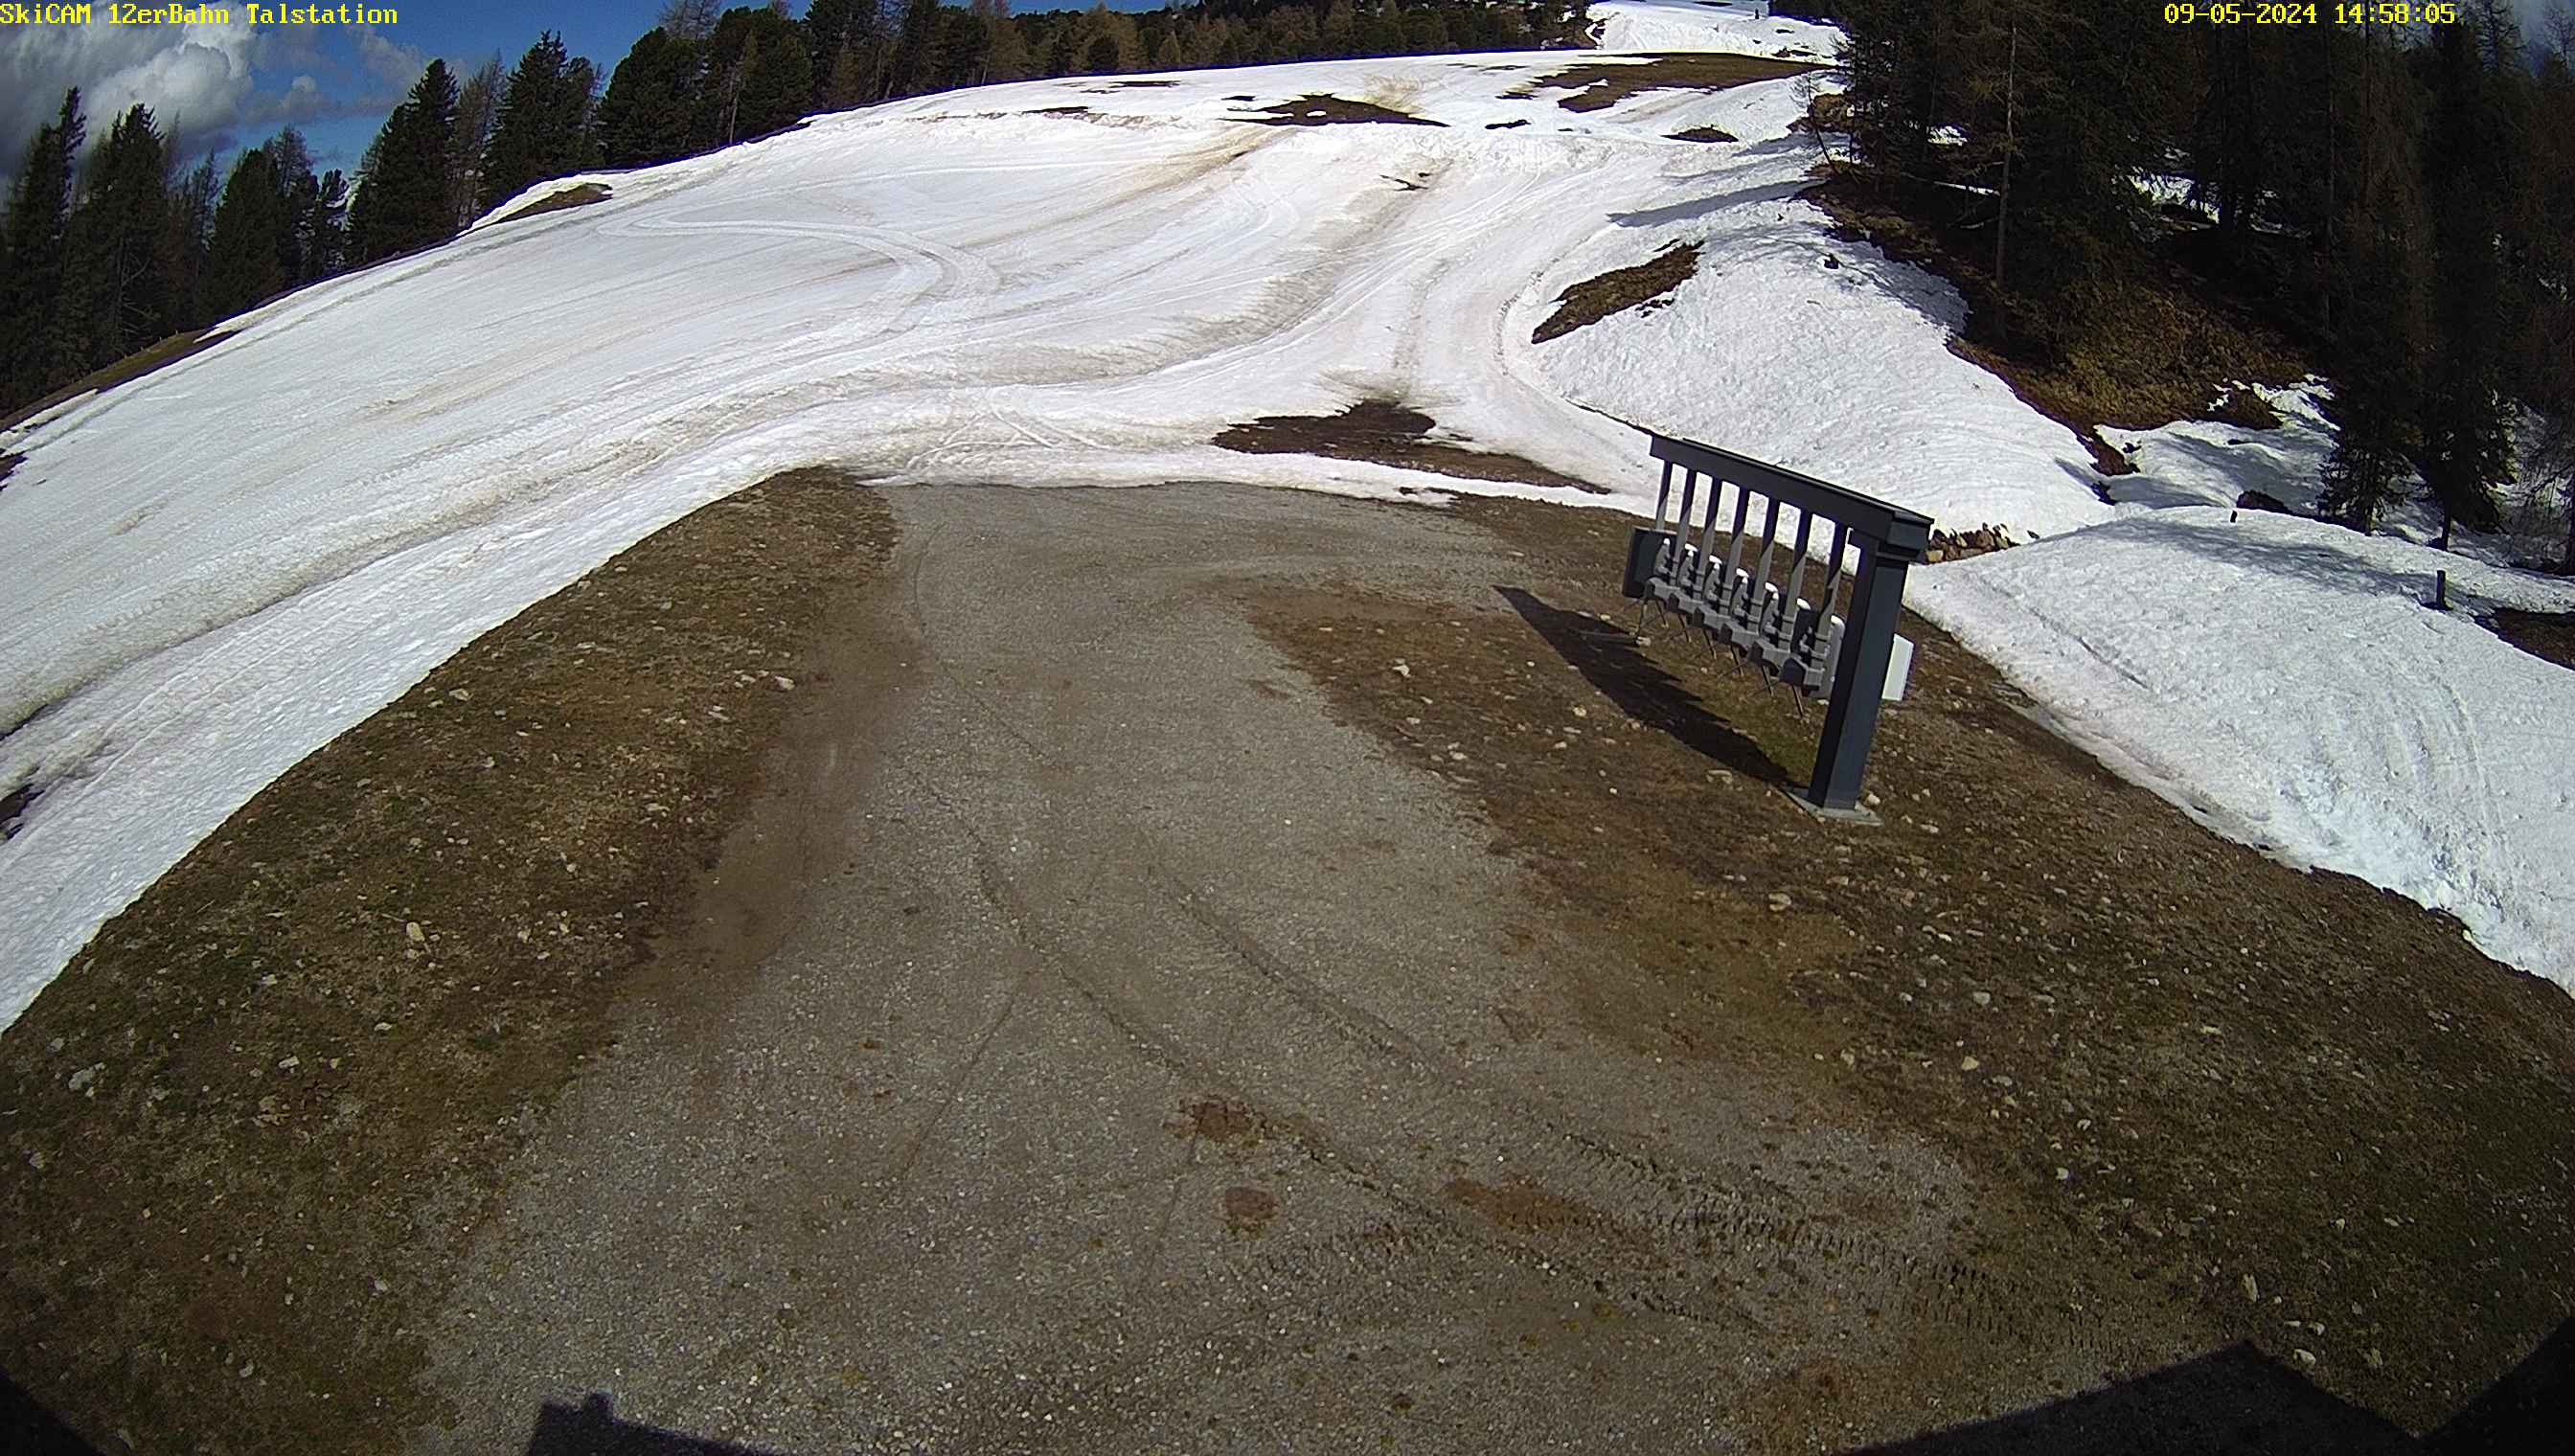 Ladis webcam - Zwoelferbahn ski station